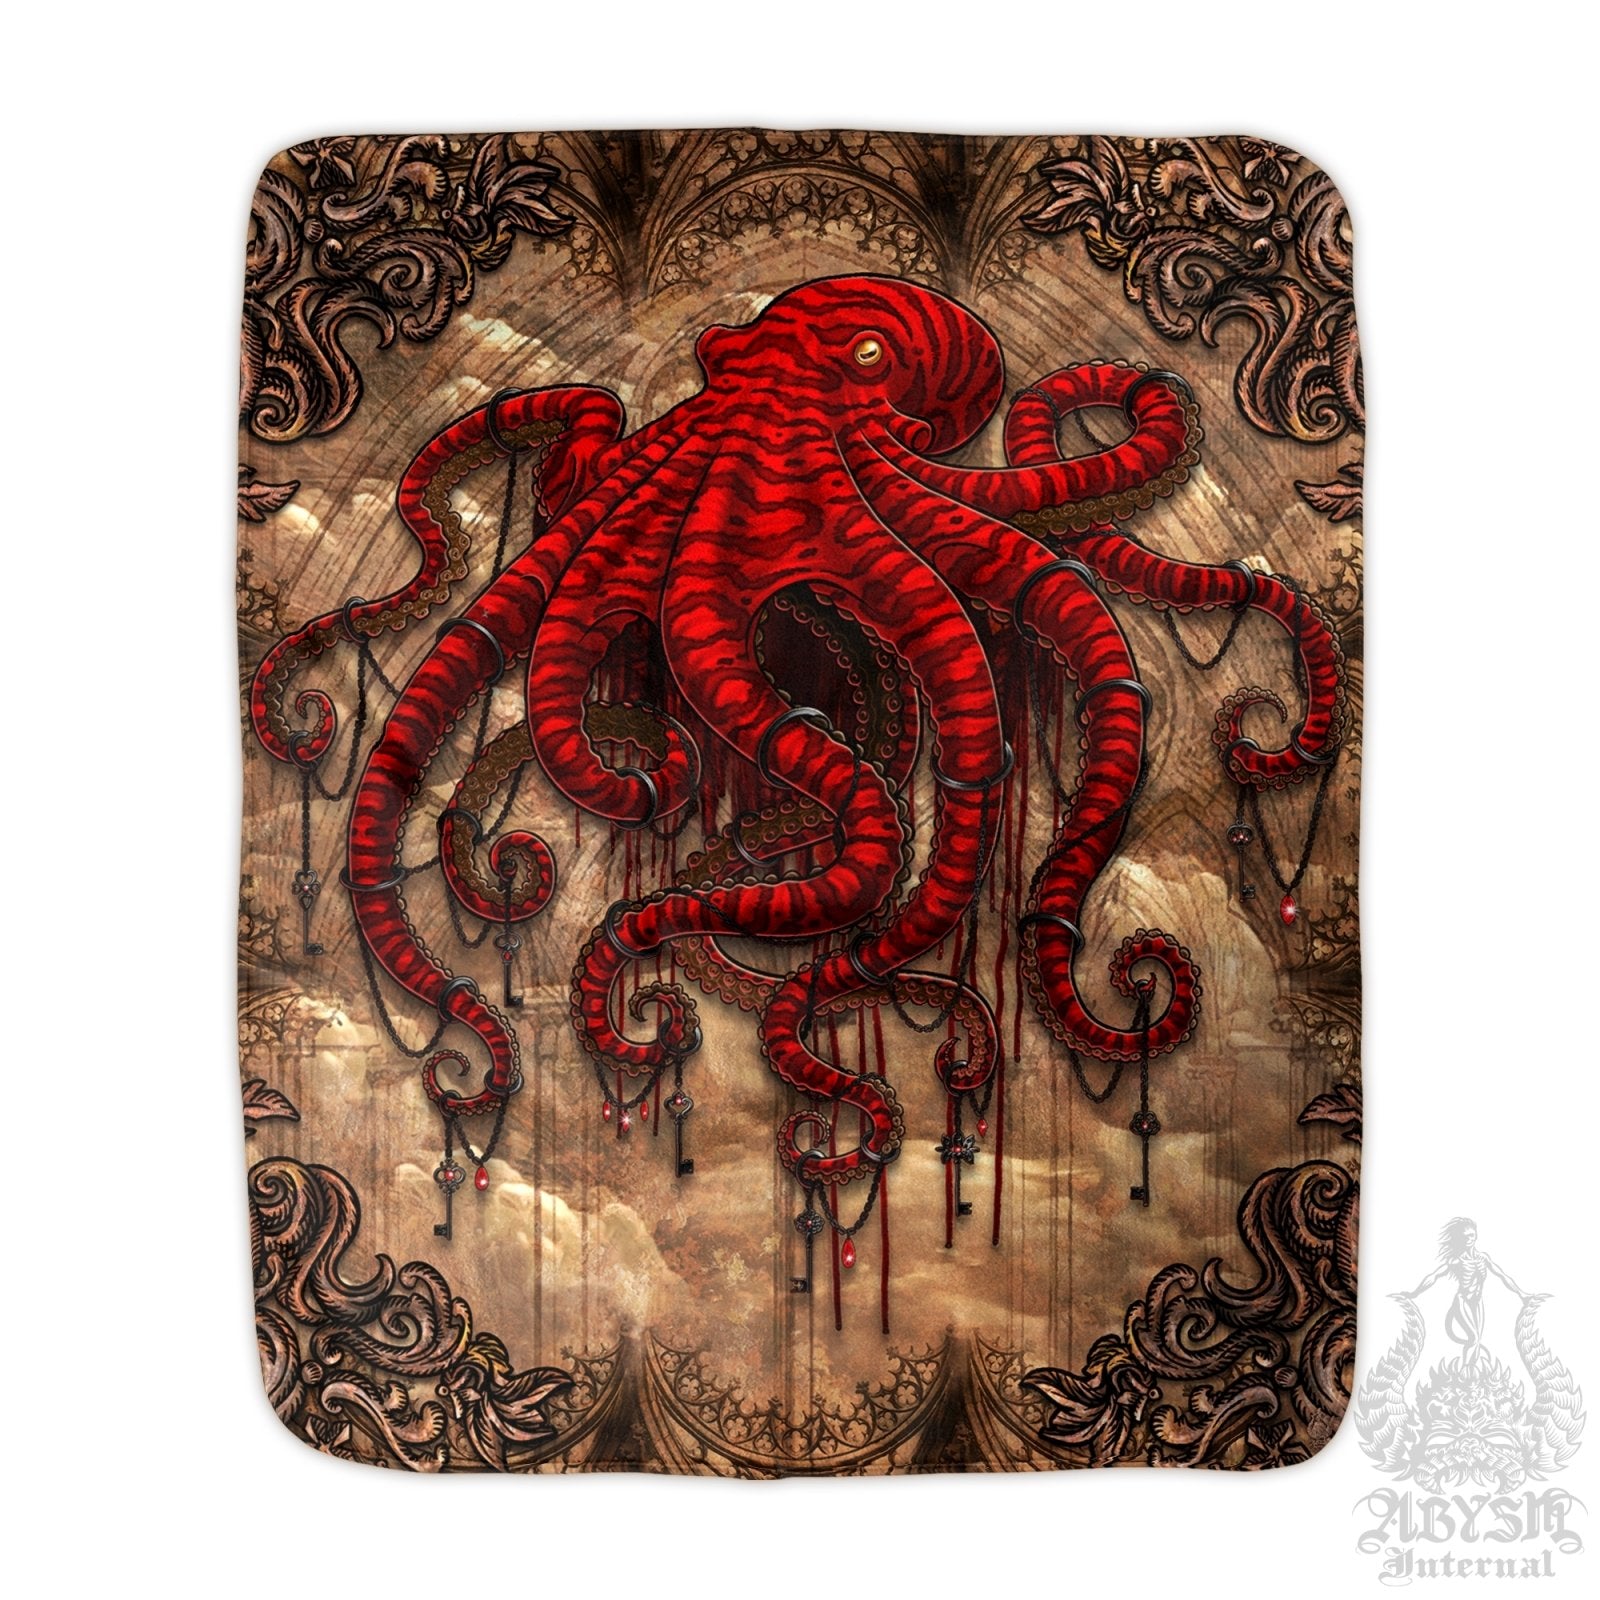 Gothic Throw Fleece Blanket, Goth Gift, Horror Home Decor, Alternative Art Gift - Red Octopus, Beige - Abysm Internal